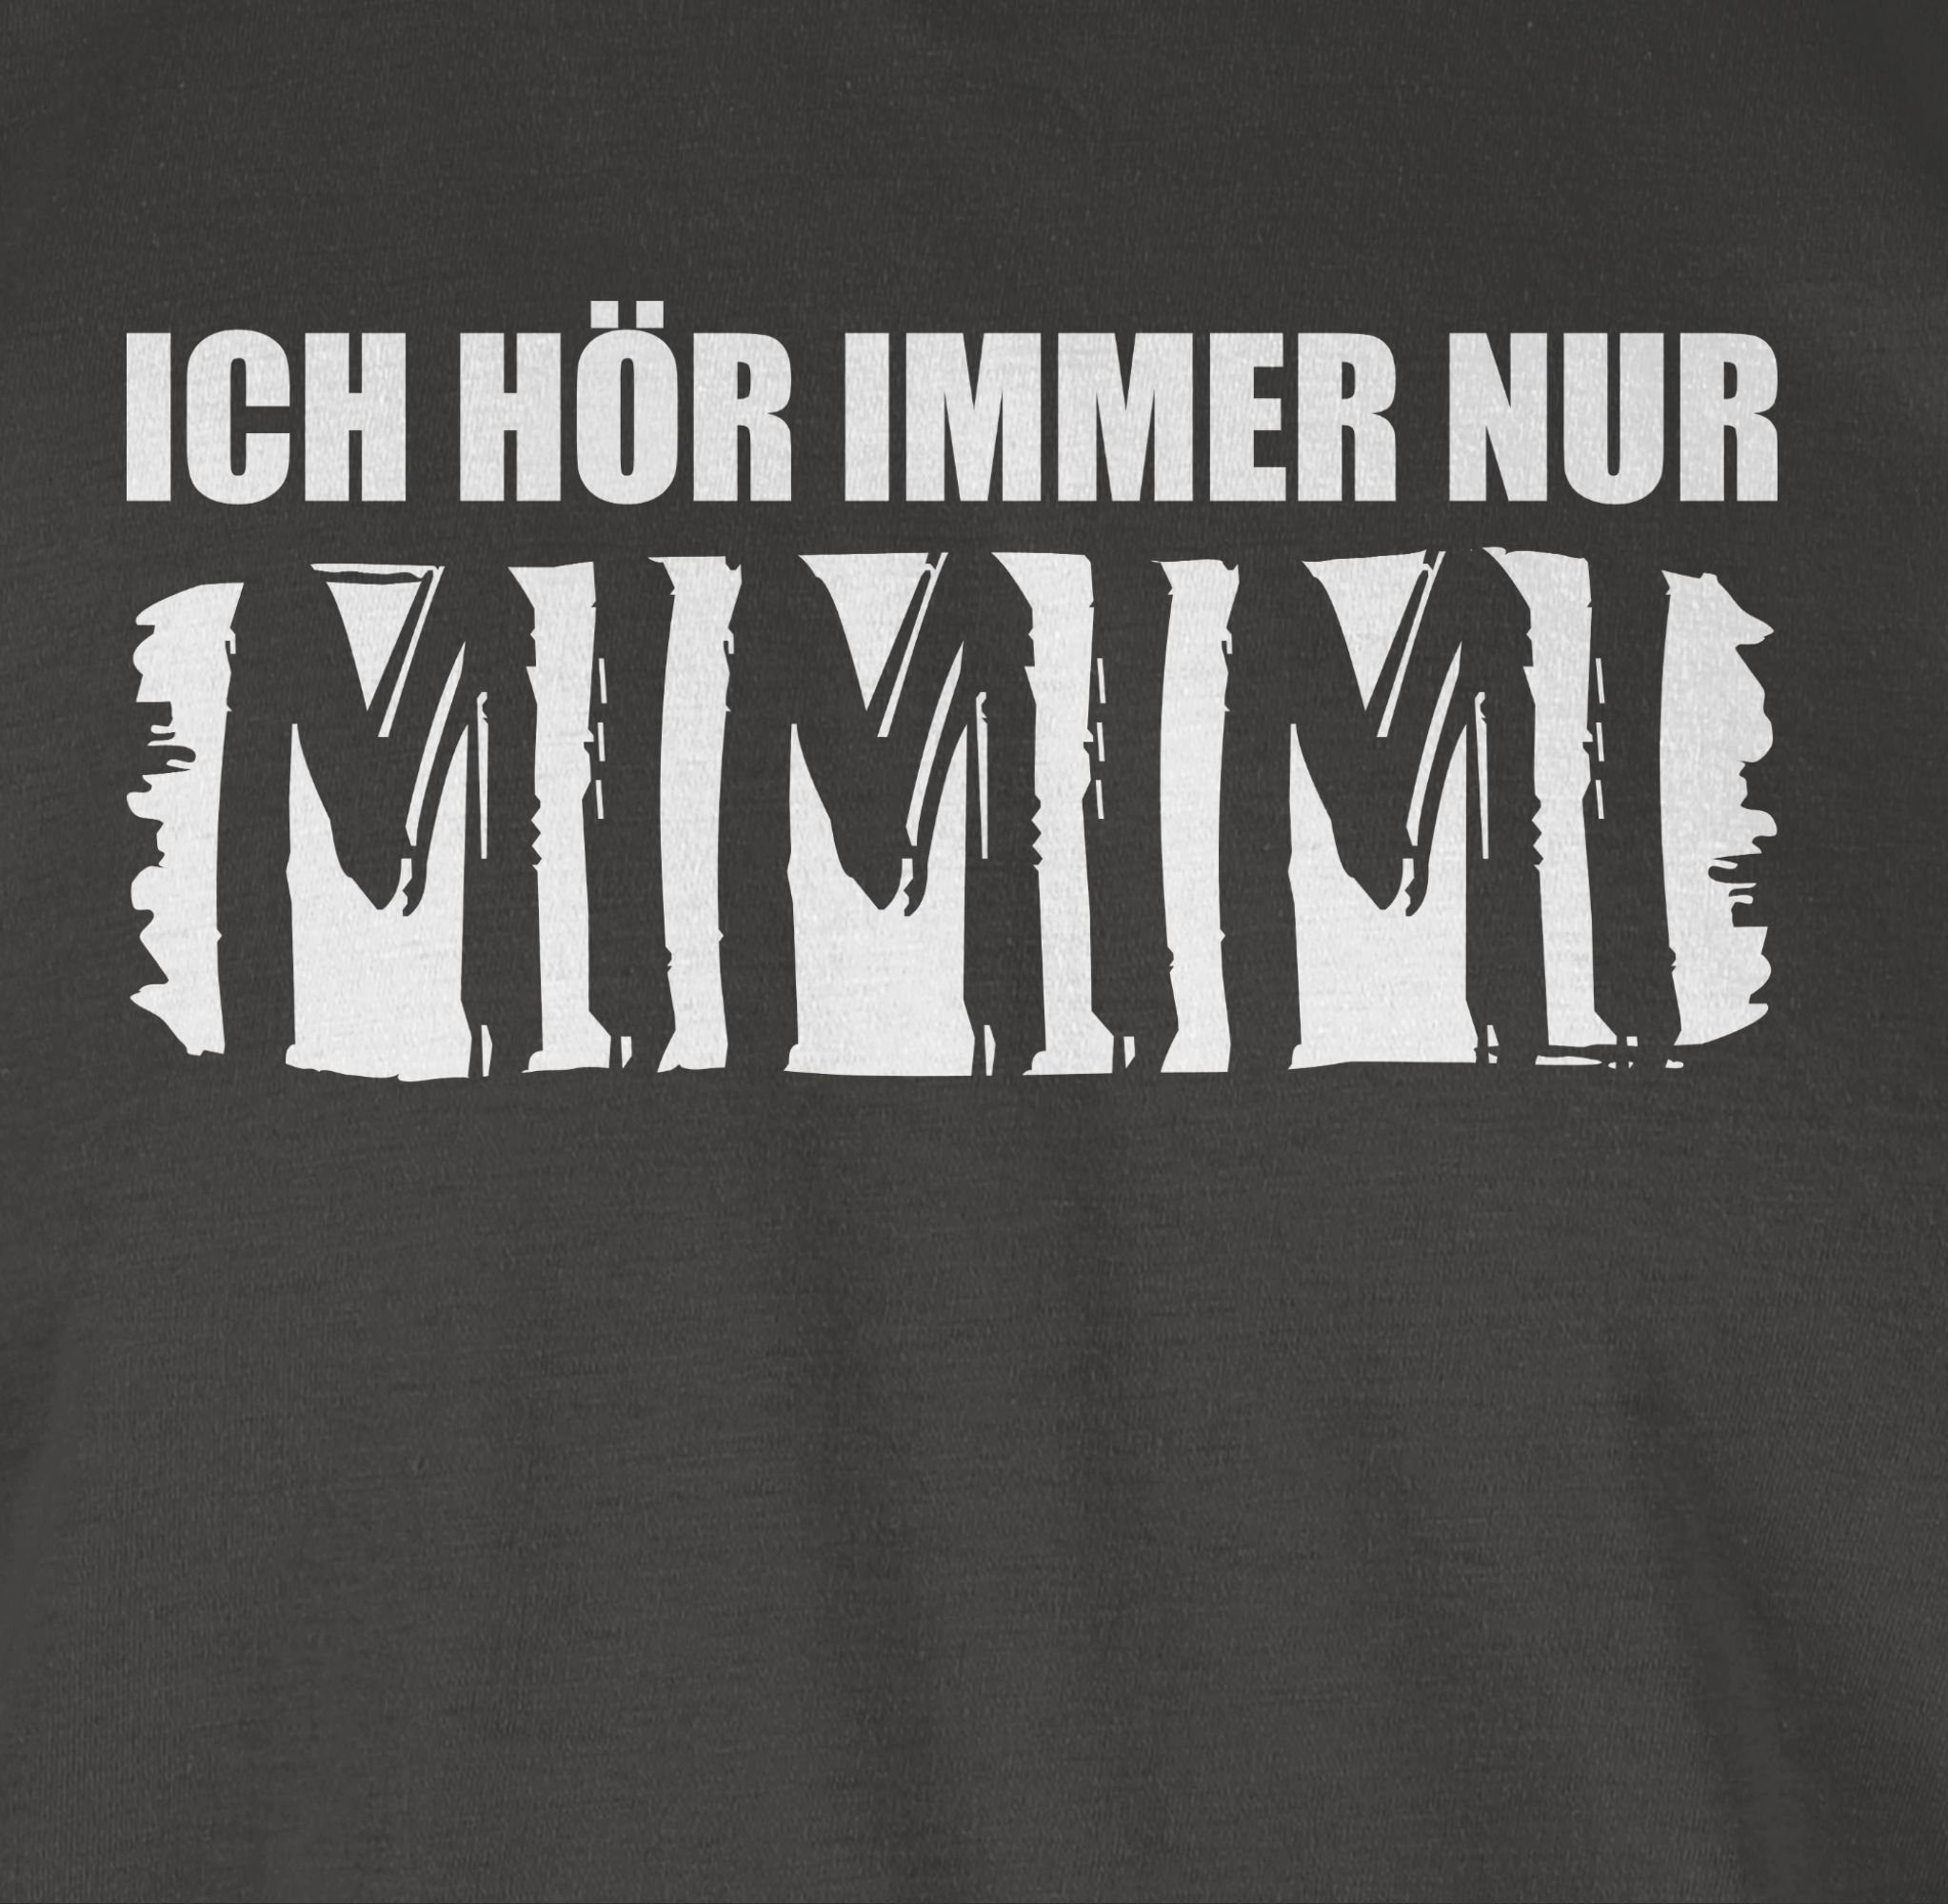 03 nur T-Shirt Spruch Shirtracer Dunkelgrau Statement Sprüche mit MIMIMI Höre